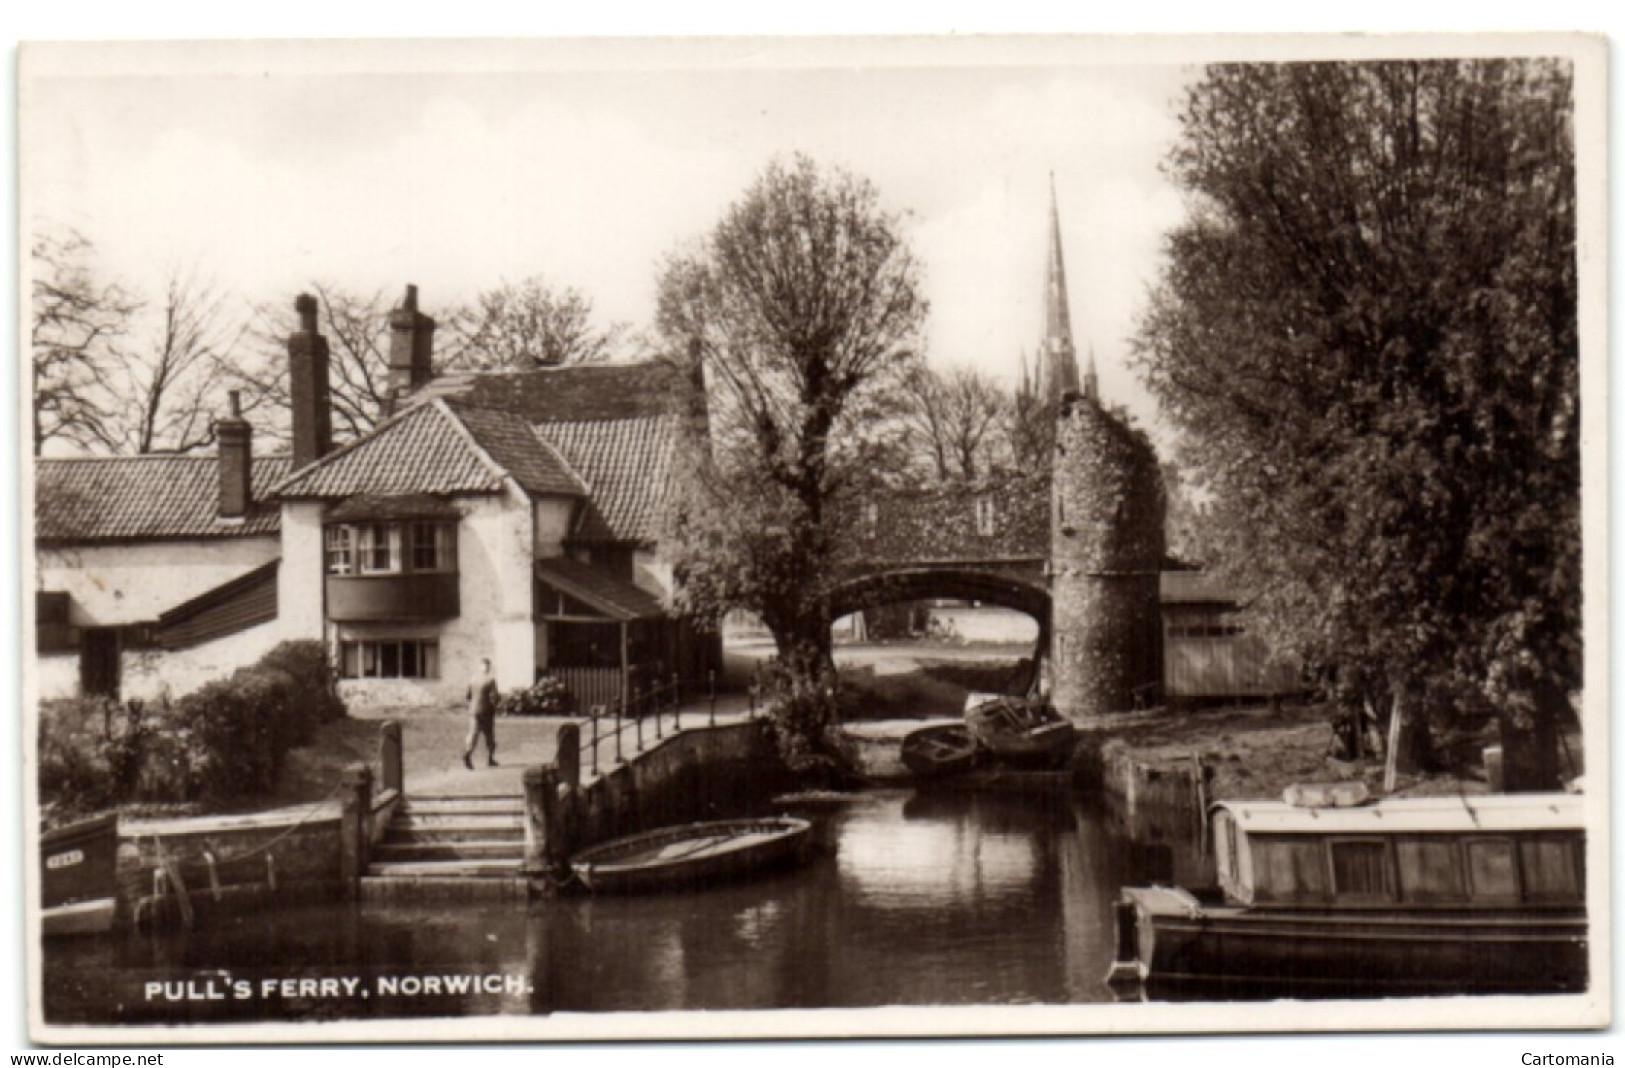 Norwich - Full's Ferry - Norwich